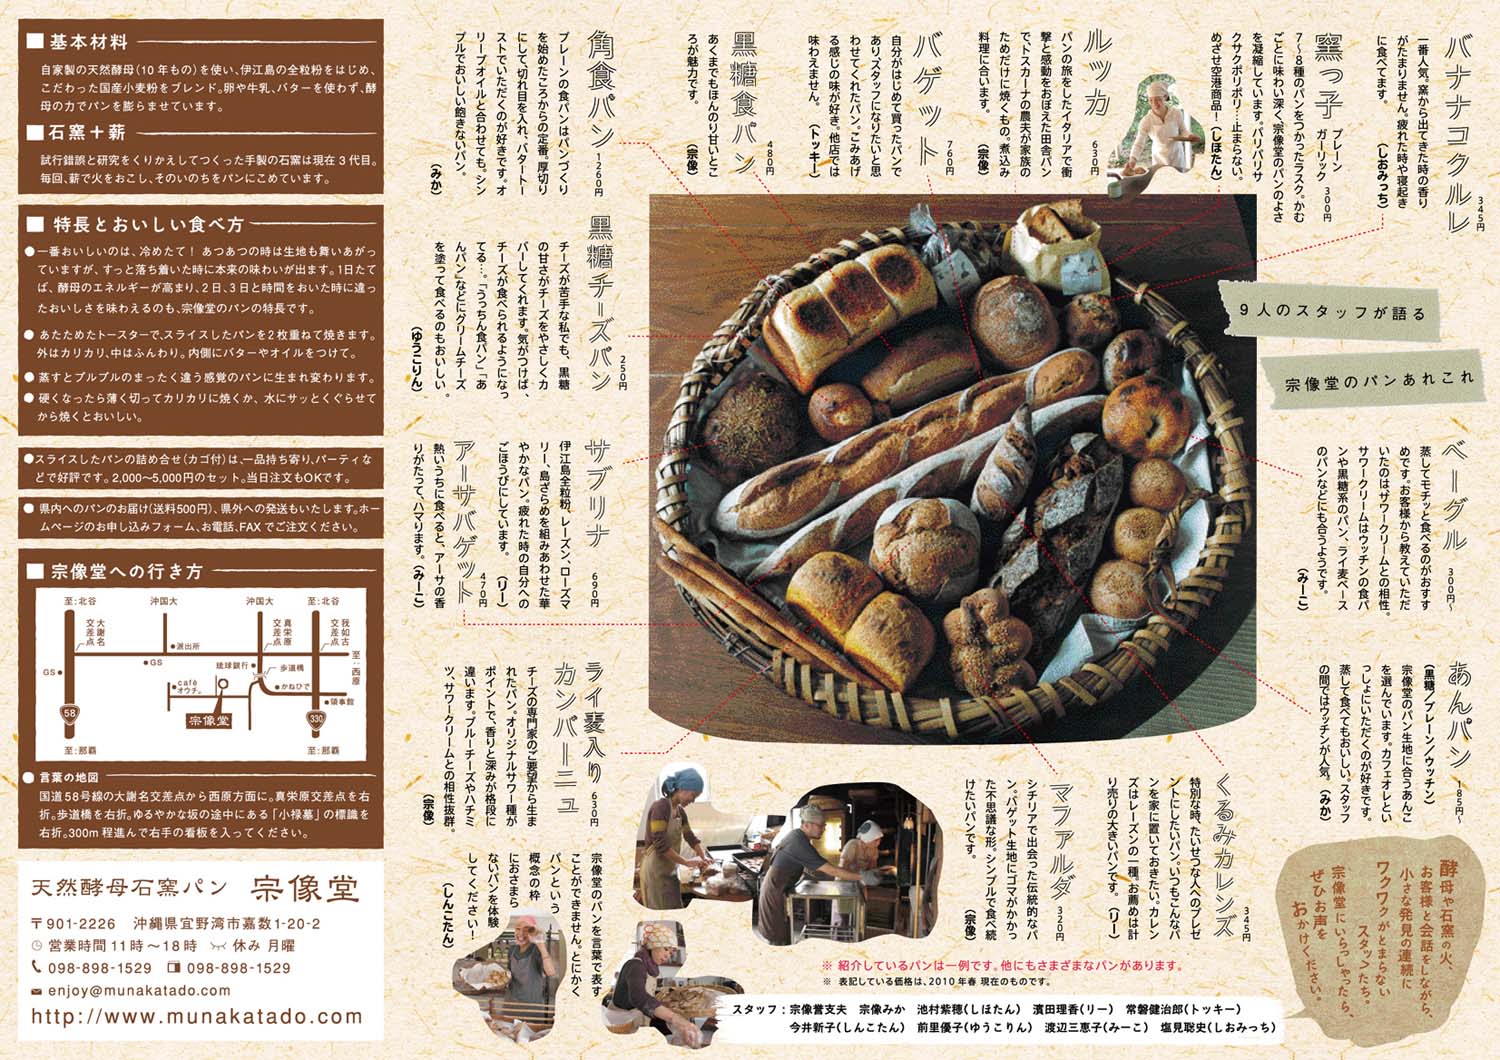 天然酵母石窯パン「宗像堂」リーフレット_c0191542_211994.jpg